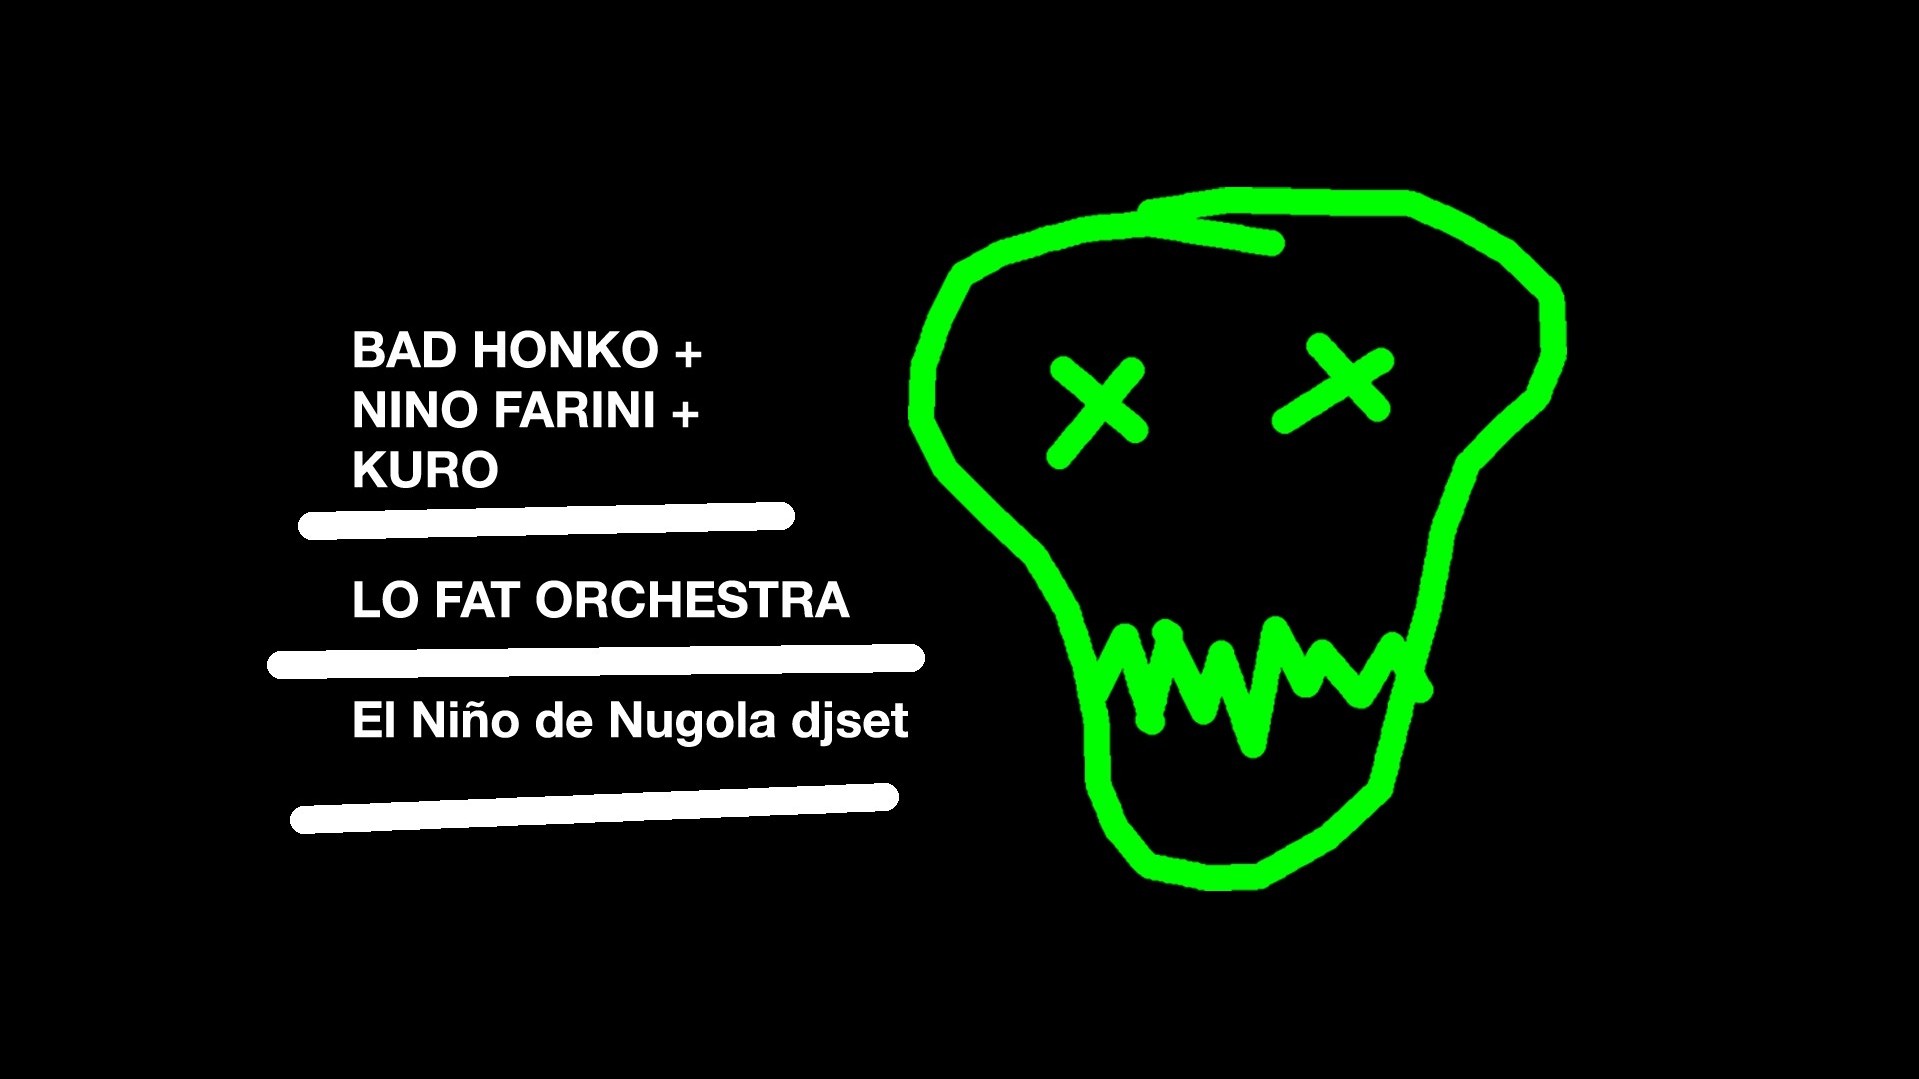 Lo Fat Orchestra + Bad Honko feat Nino Farini & Kuro + El Niño de Nugola djset